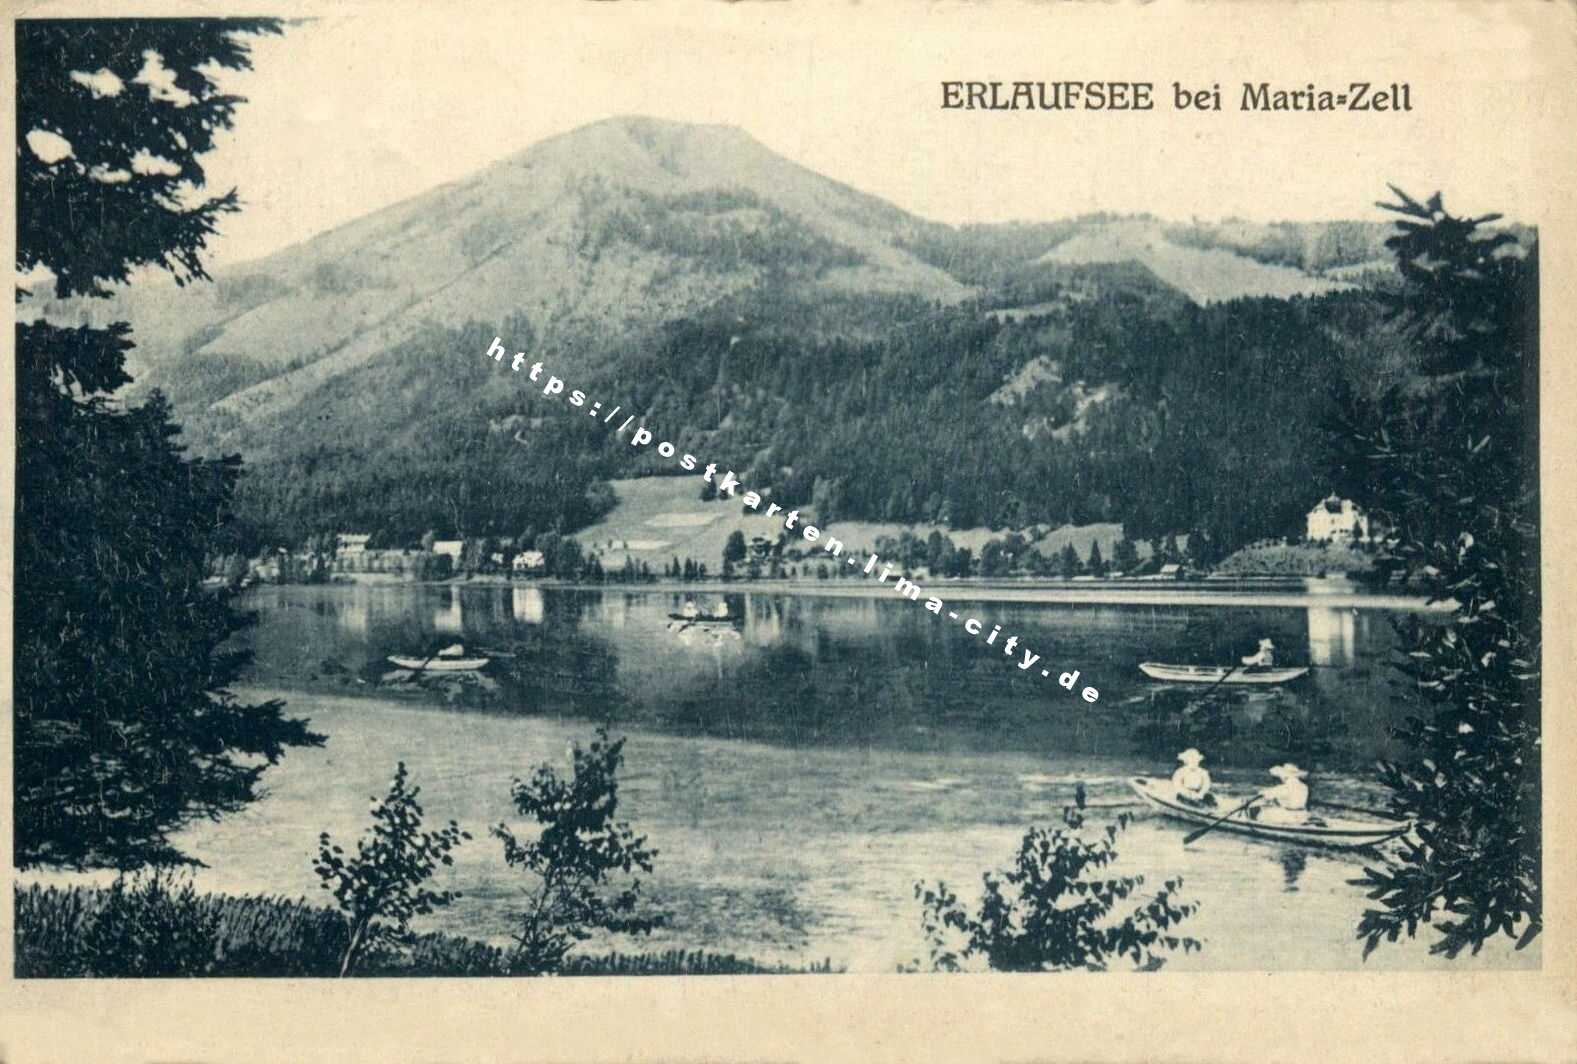 Erlaufsee 1924